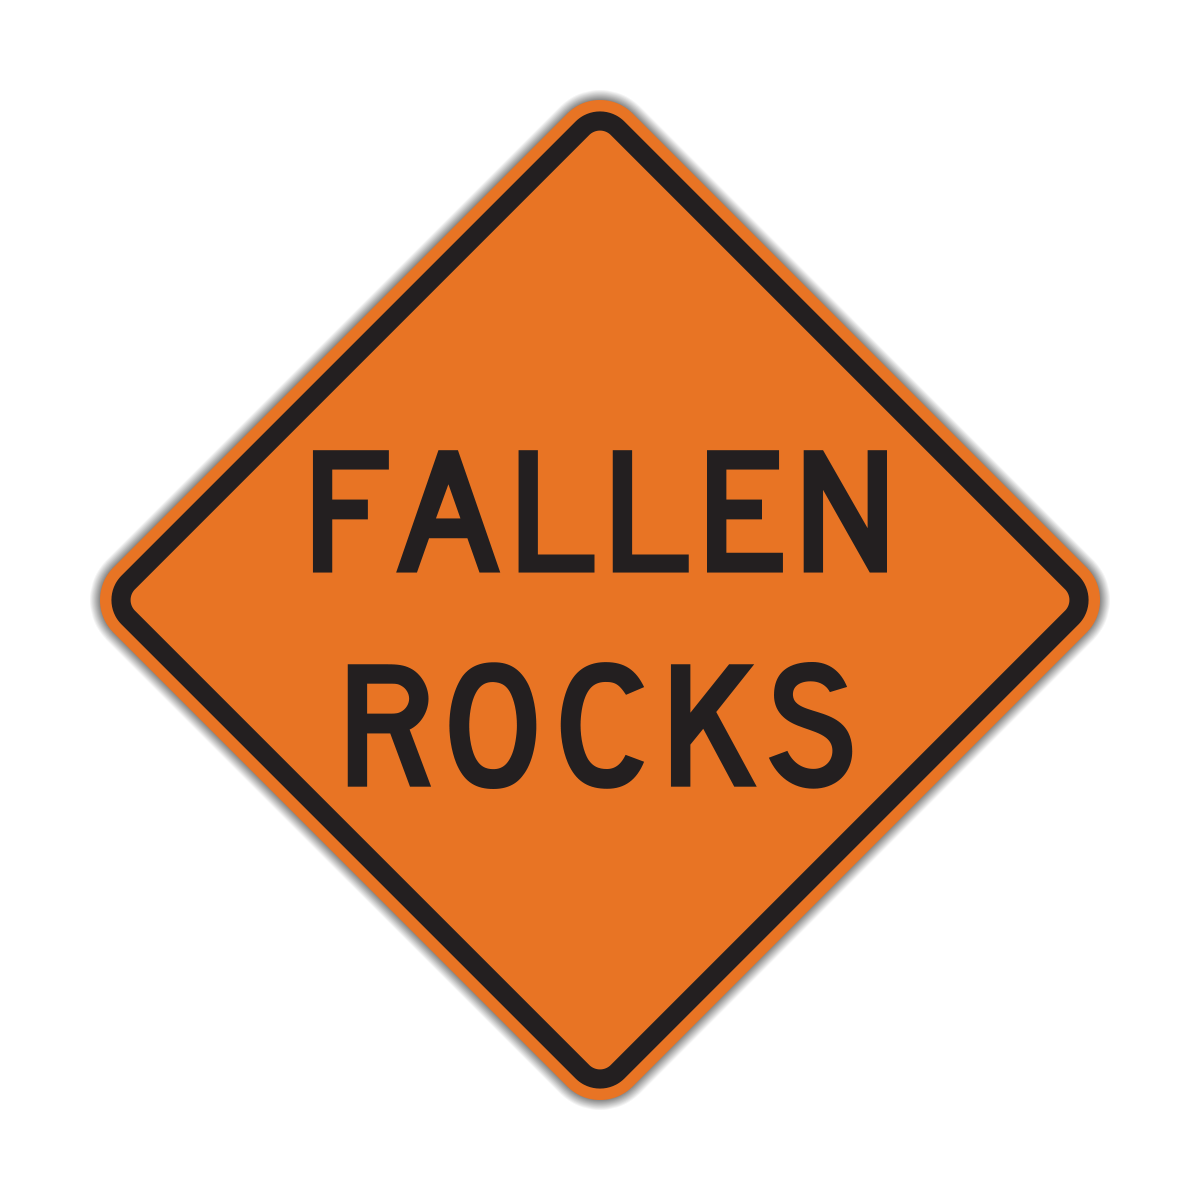 Fallen Rocks Road Warning Sign (W8-14)